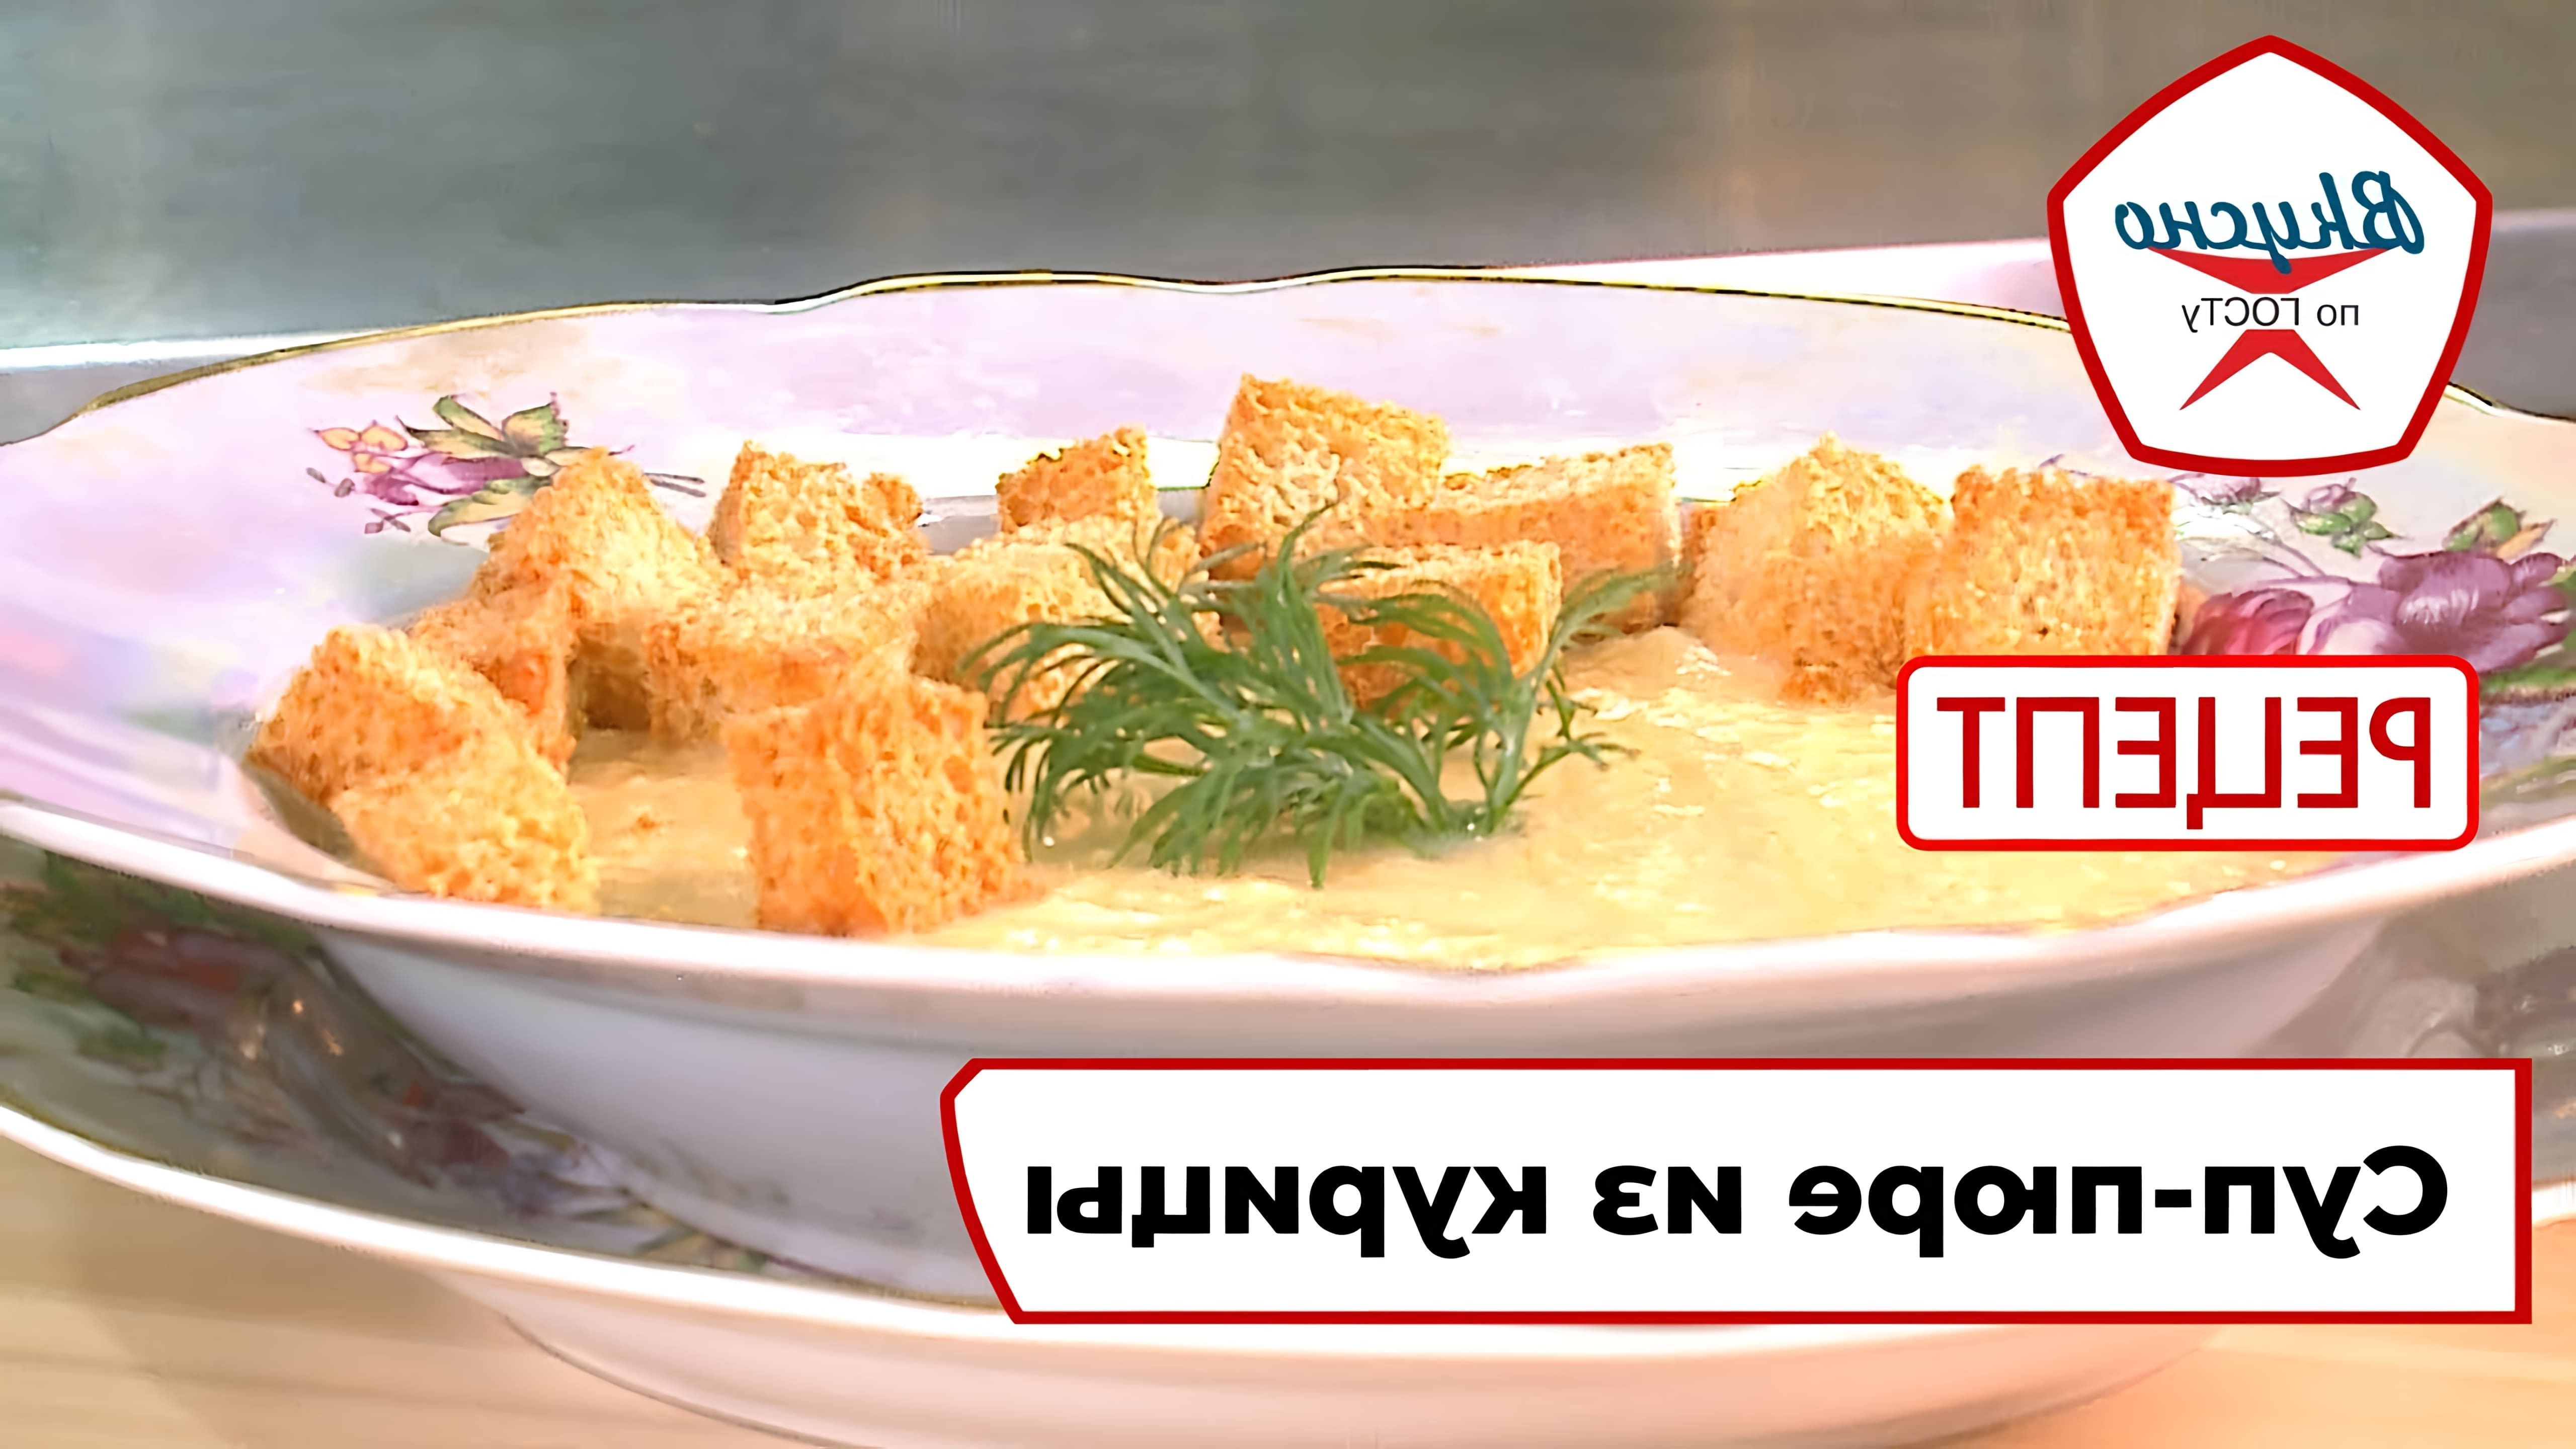 В этом видео демонстрируется рецепт приготовления супа-пюре из курицы по ГОСТу